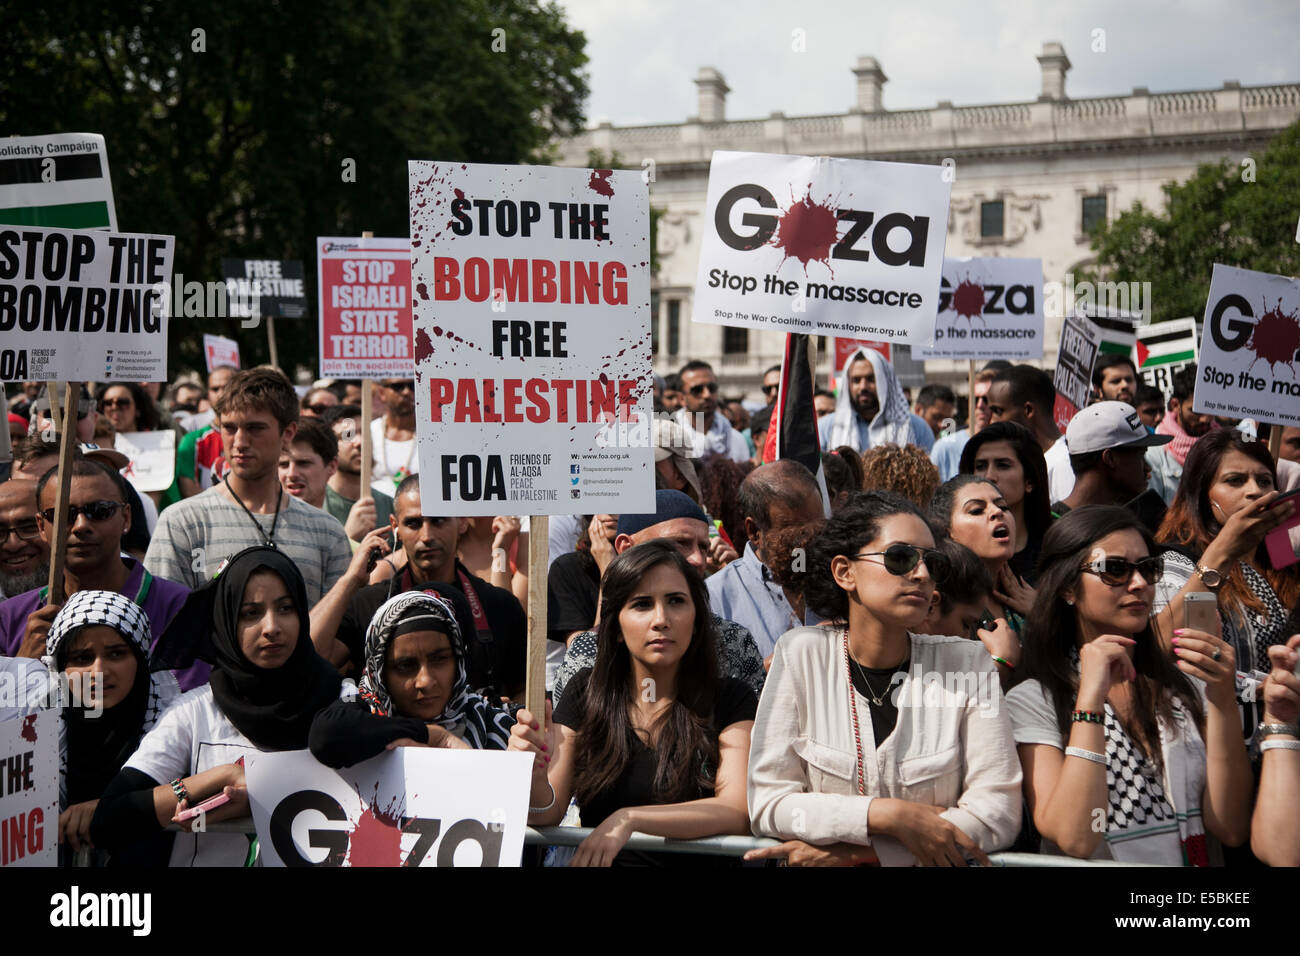 Londres, Reino Unido. 26 de julio de 2014. Decenas de miles de manifestantes marcharon en el centro de Londres para mostrar su indignación contra la ofensiva israelí en Gaza. Crédito: Kristian Buus/Alamy Live News Foto de stock